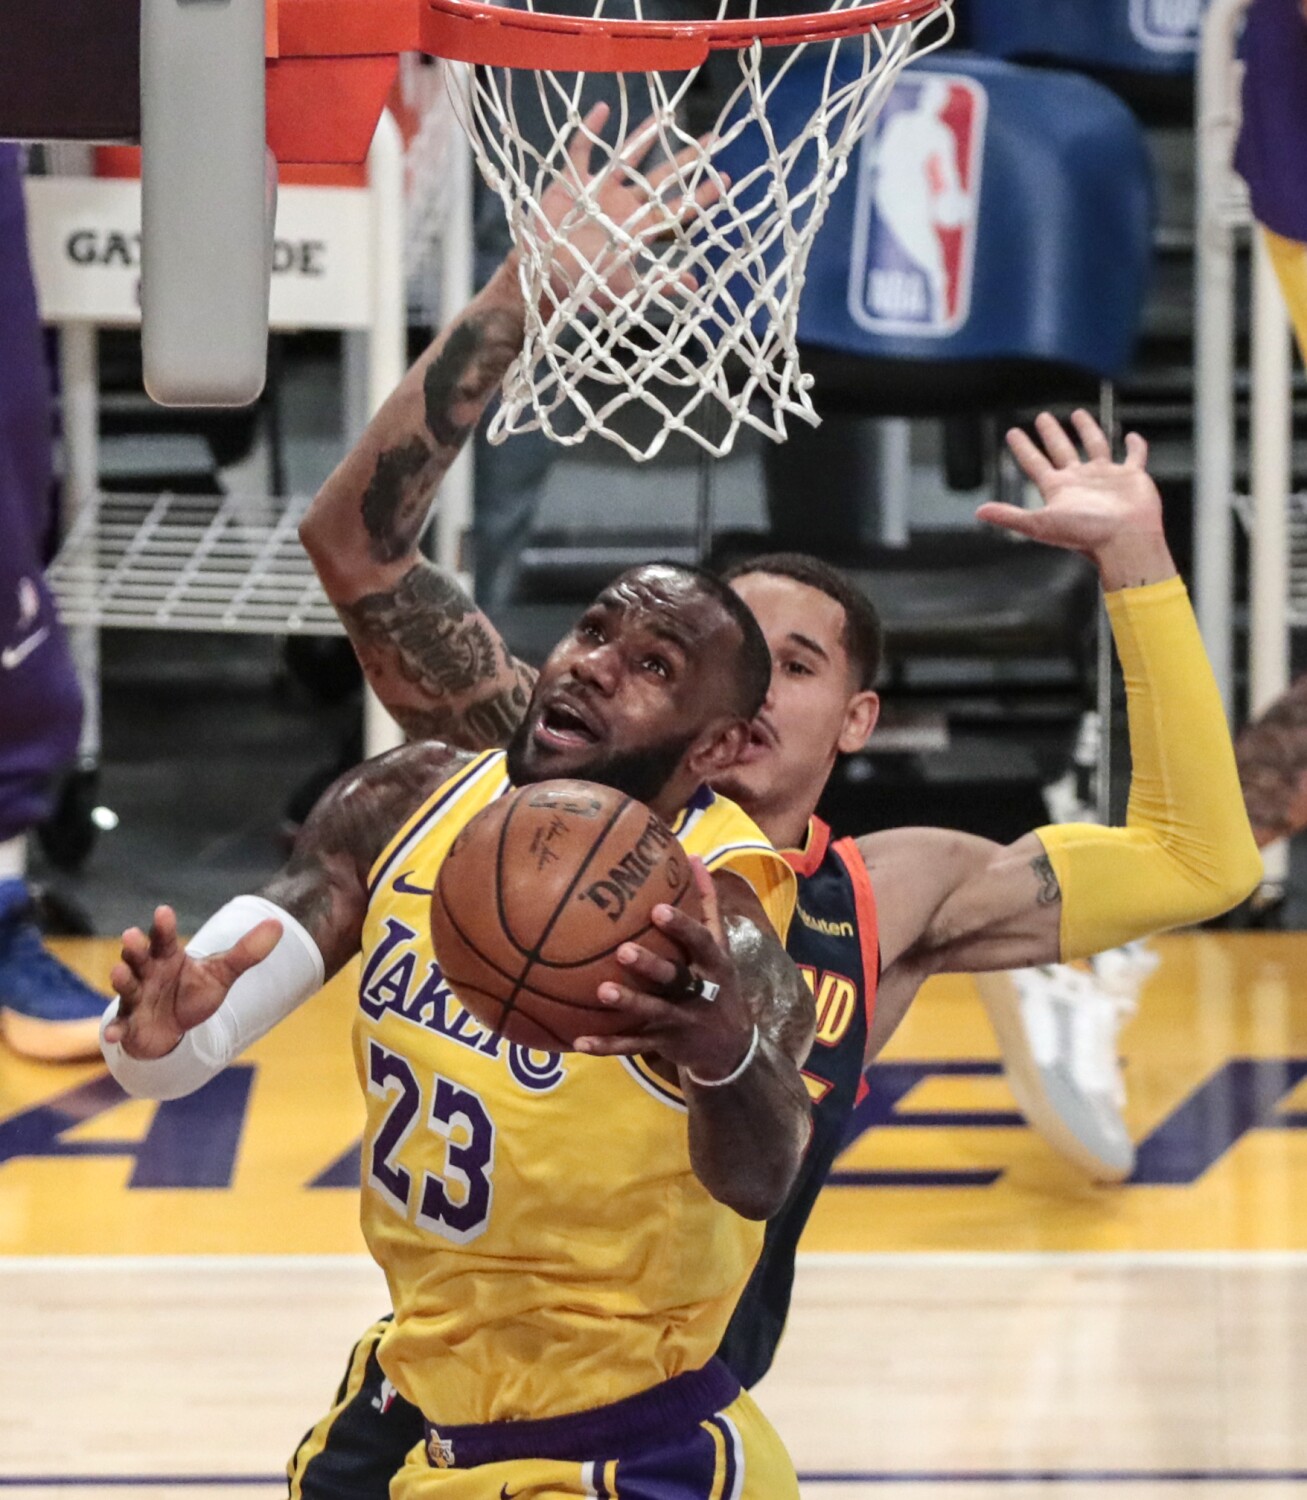 Lakers make playoffs on LeBron James' game-winning 3-pointer